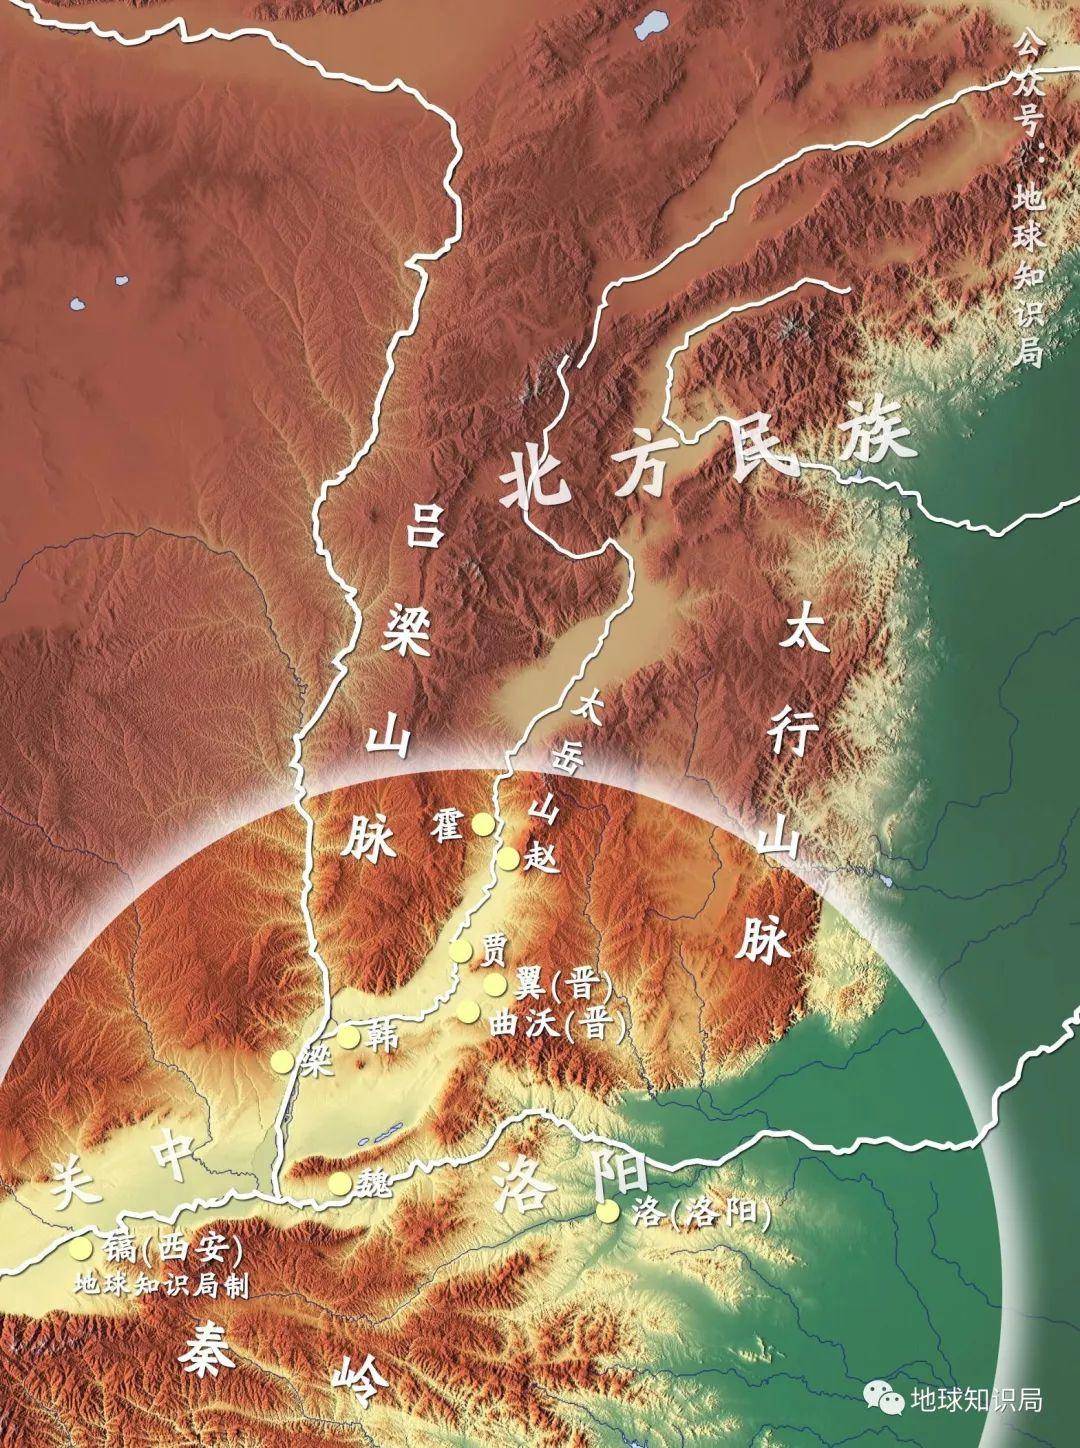 山西的河东地区对中国意味着什么？